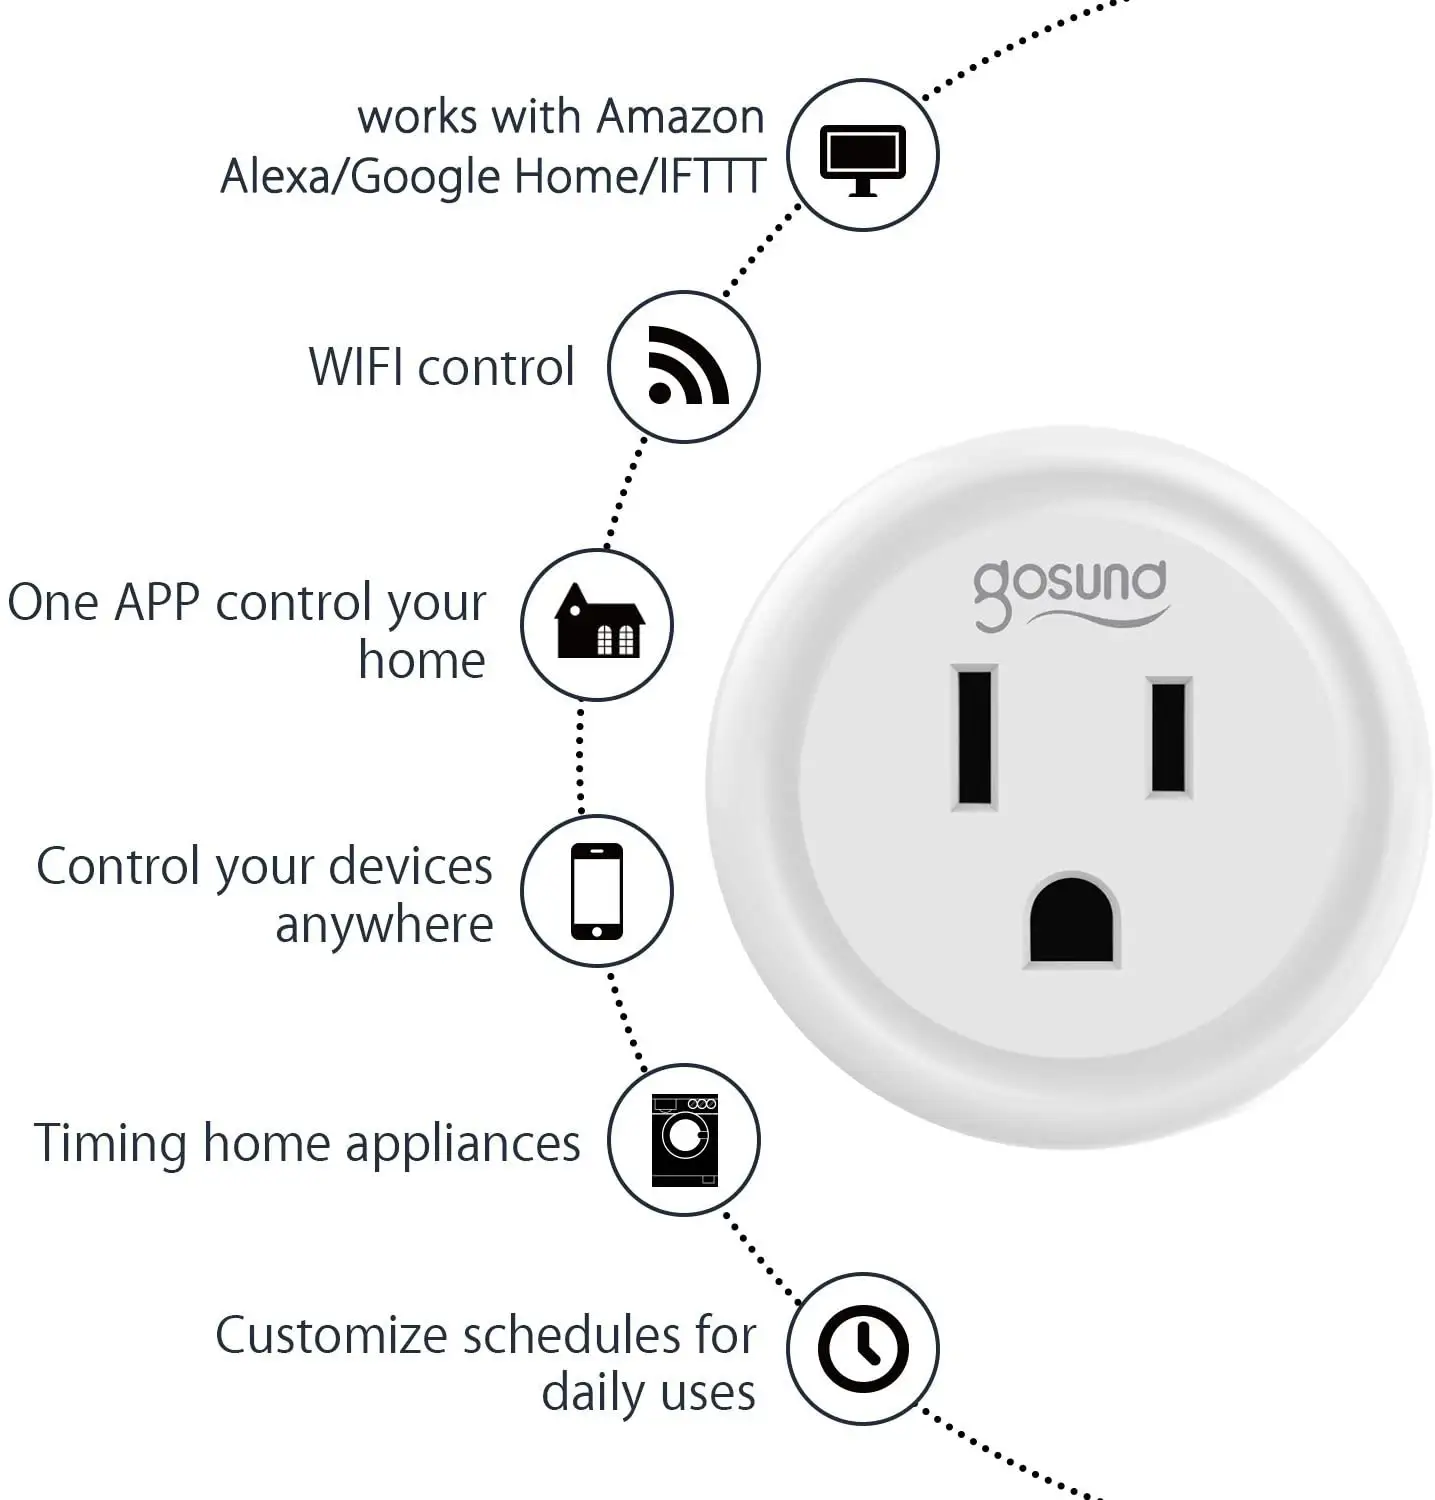 gosund mini smart plug google home